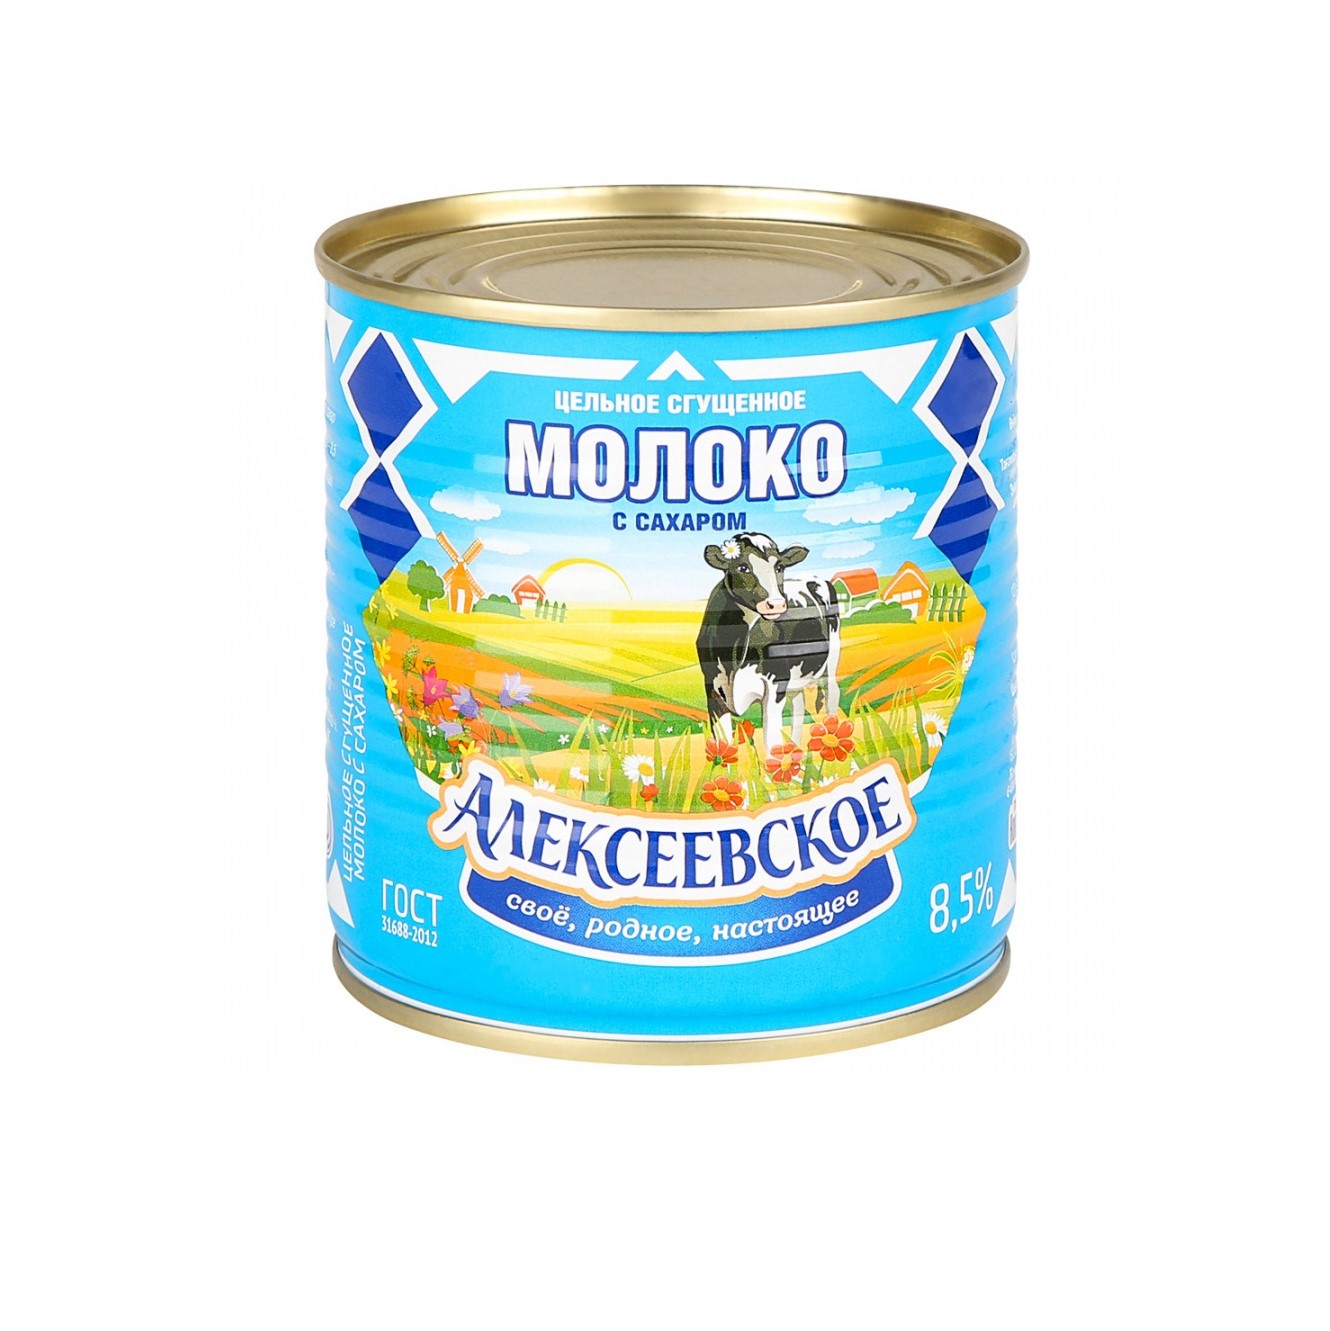 Молоко Алексеевское сгущенное с сахаром 8,5%, 360 г молоко нижнекисляйская мк цельное сгущенное с сахаром 8 5% 400 г